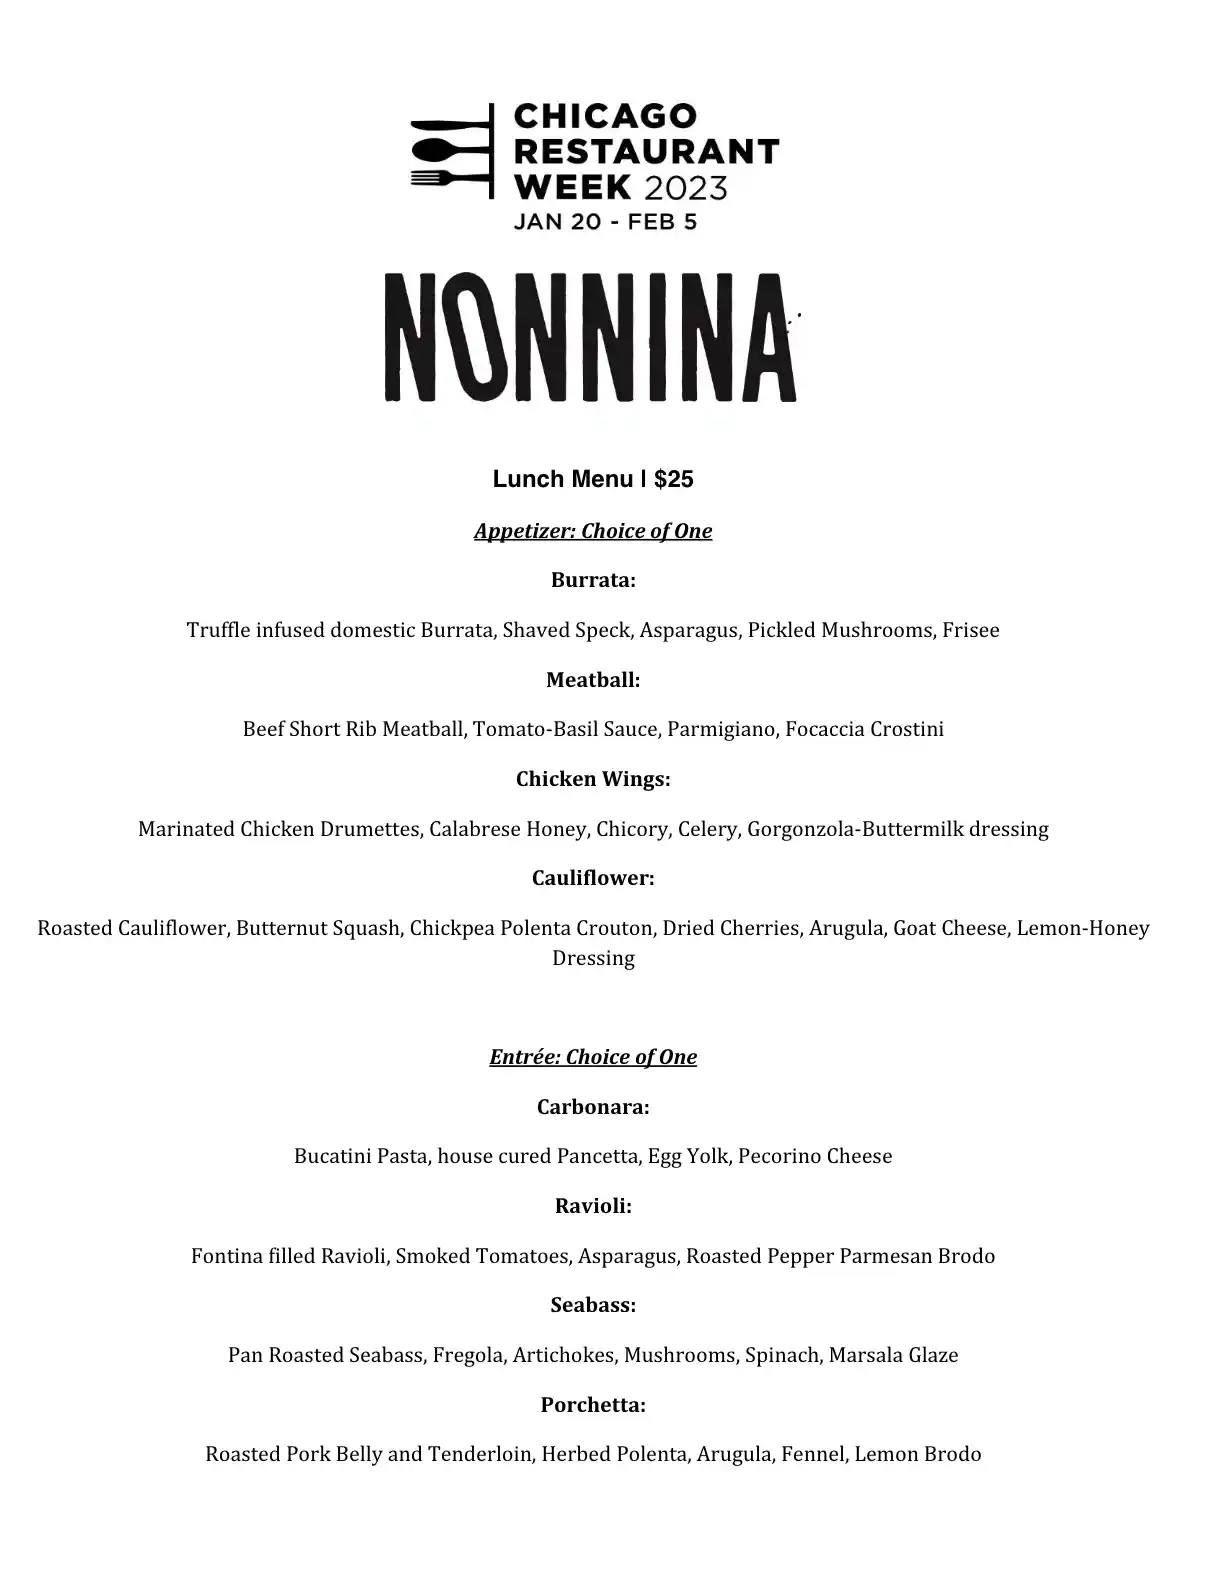 Chicago Restaurant Week 2023 Menu Nonnina Lunch